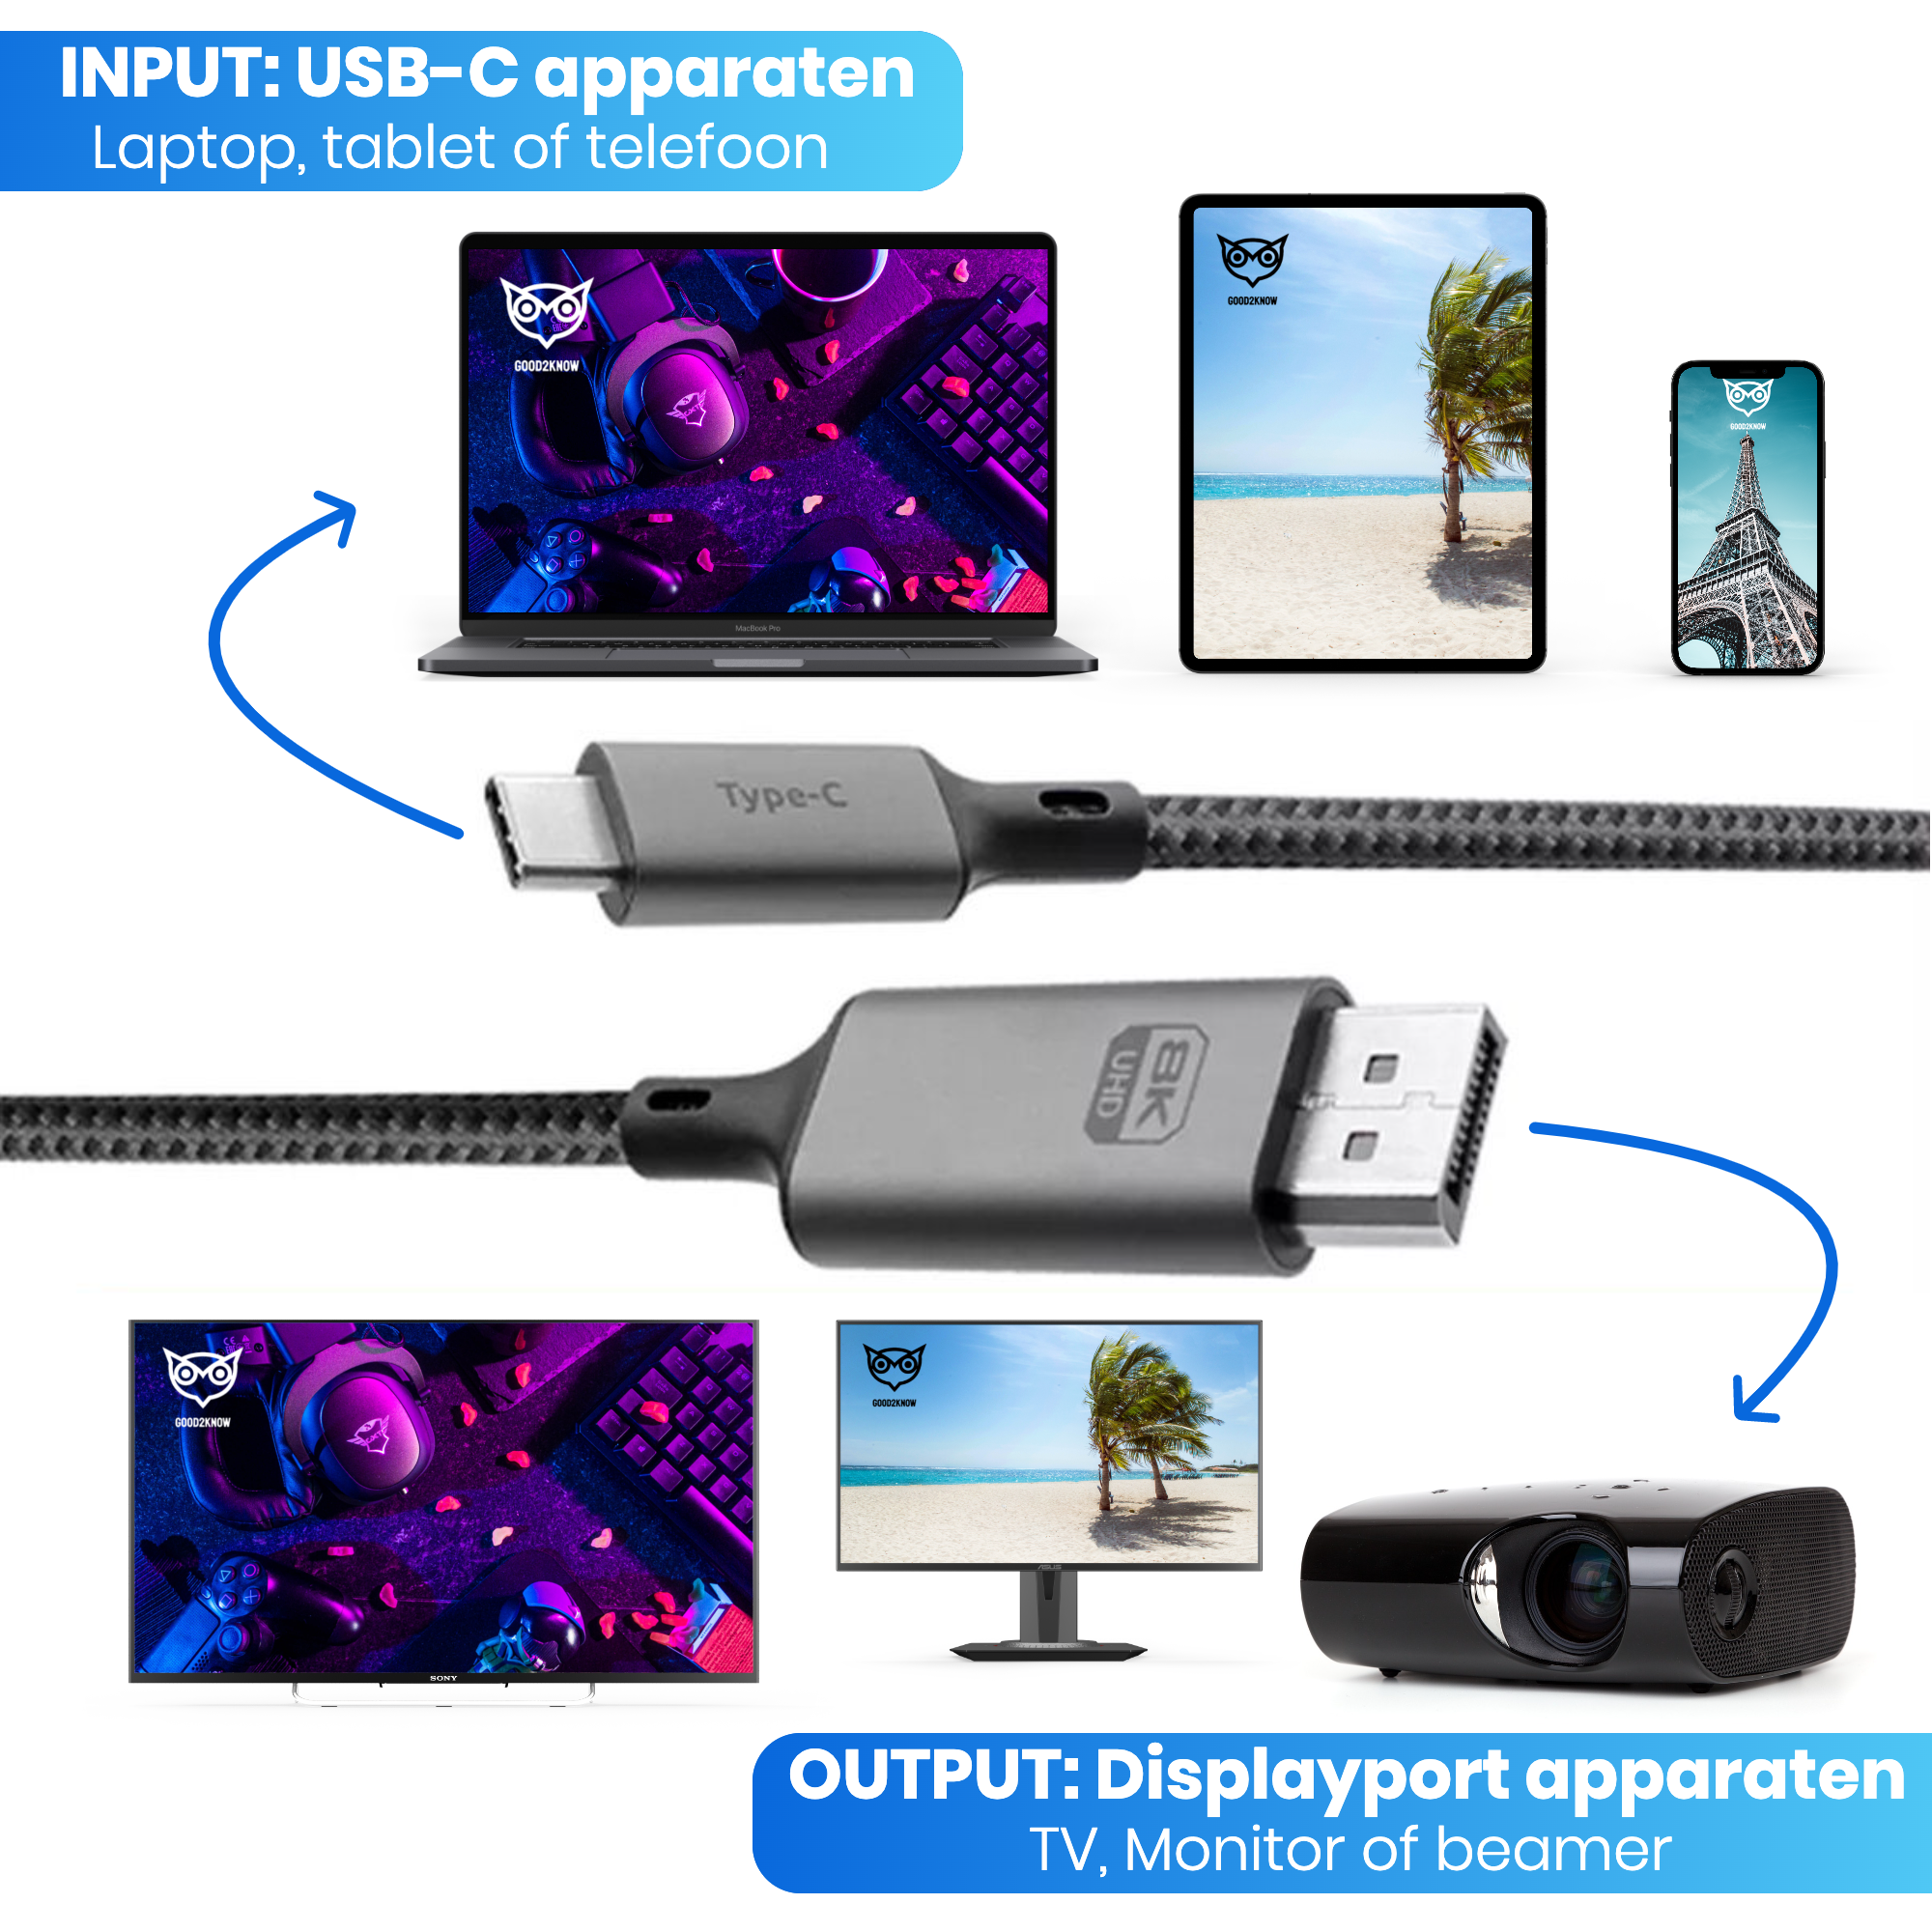 Good2know USB-C 3.1 Naar Displayport DP 1.4 - 8K 60HZ - 2 METER